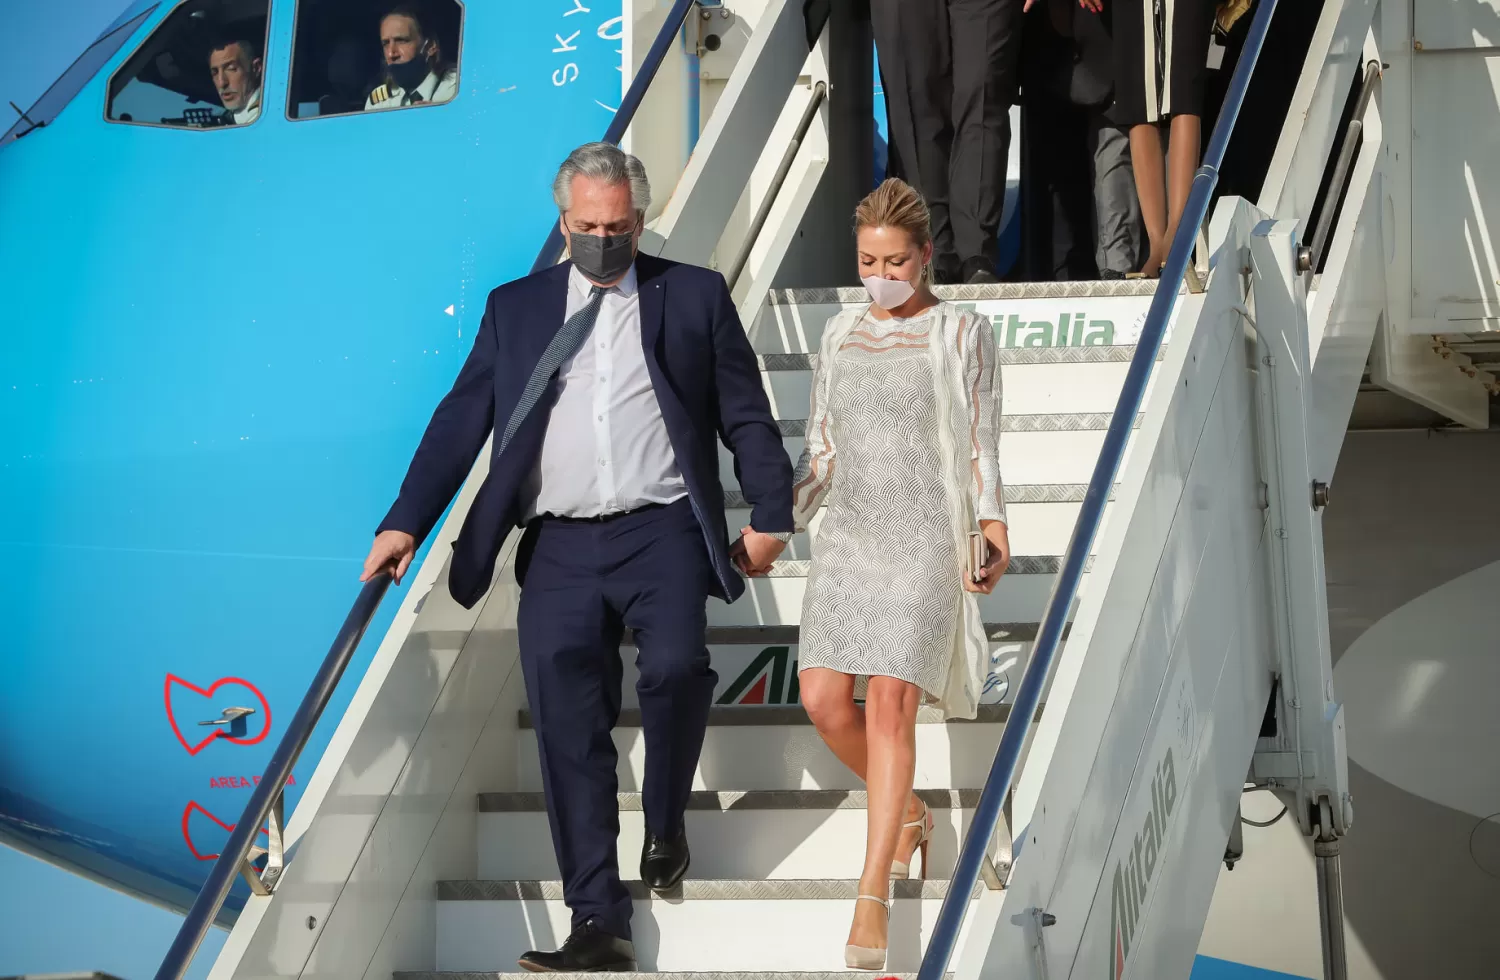 El Presidente y la primera dama en Italia. Foto presidencia